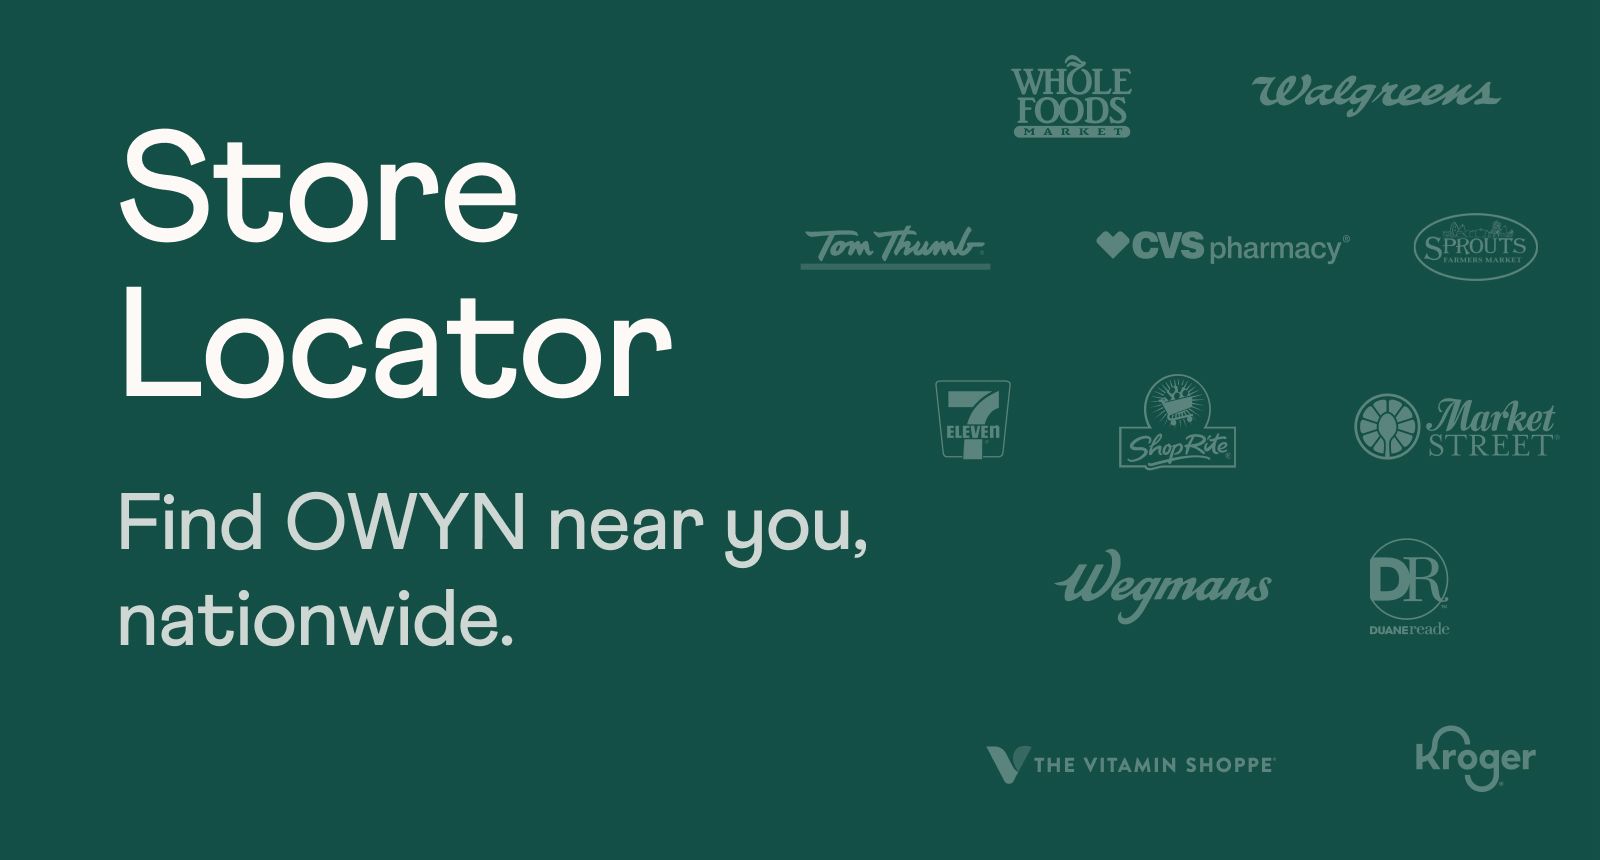 Store Locator. Find OWYN near you, nationwide.